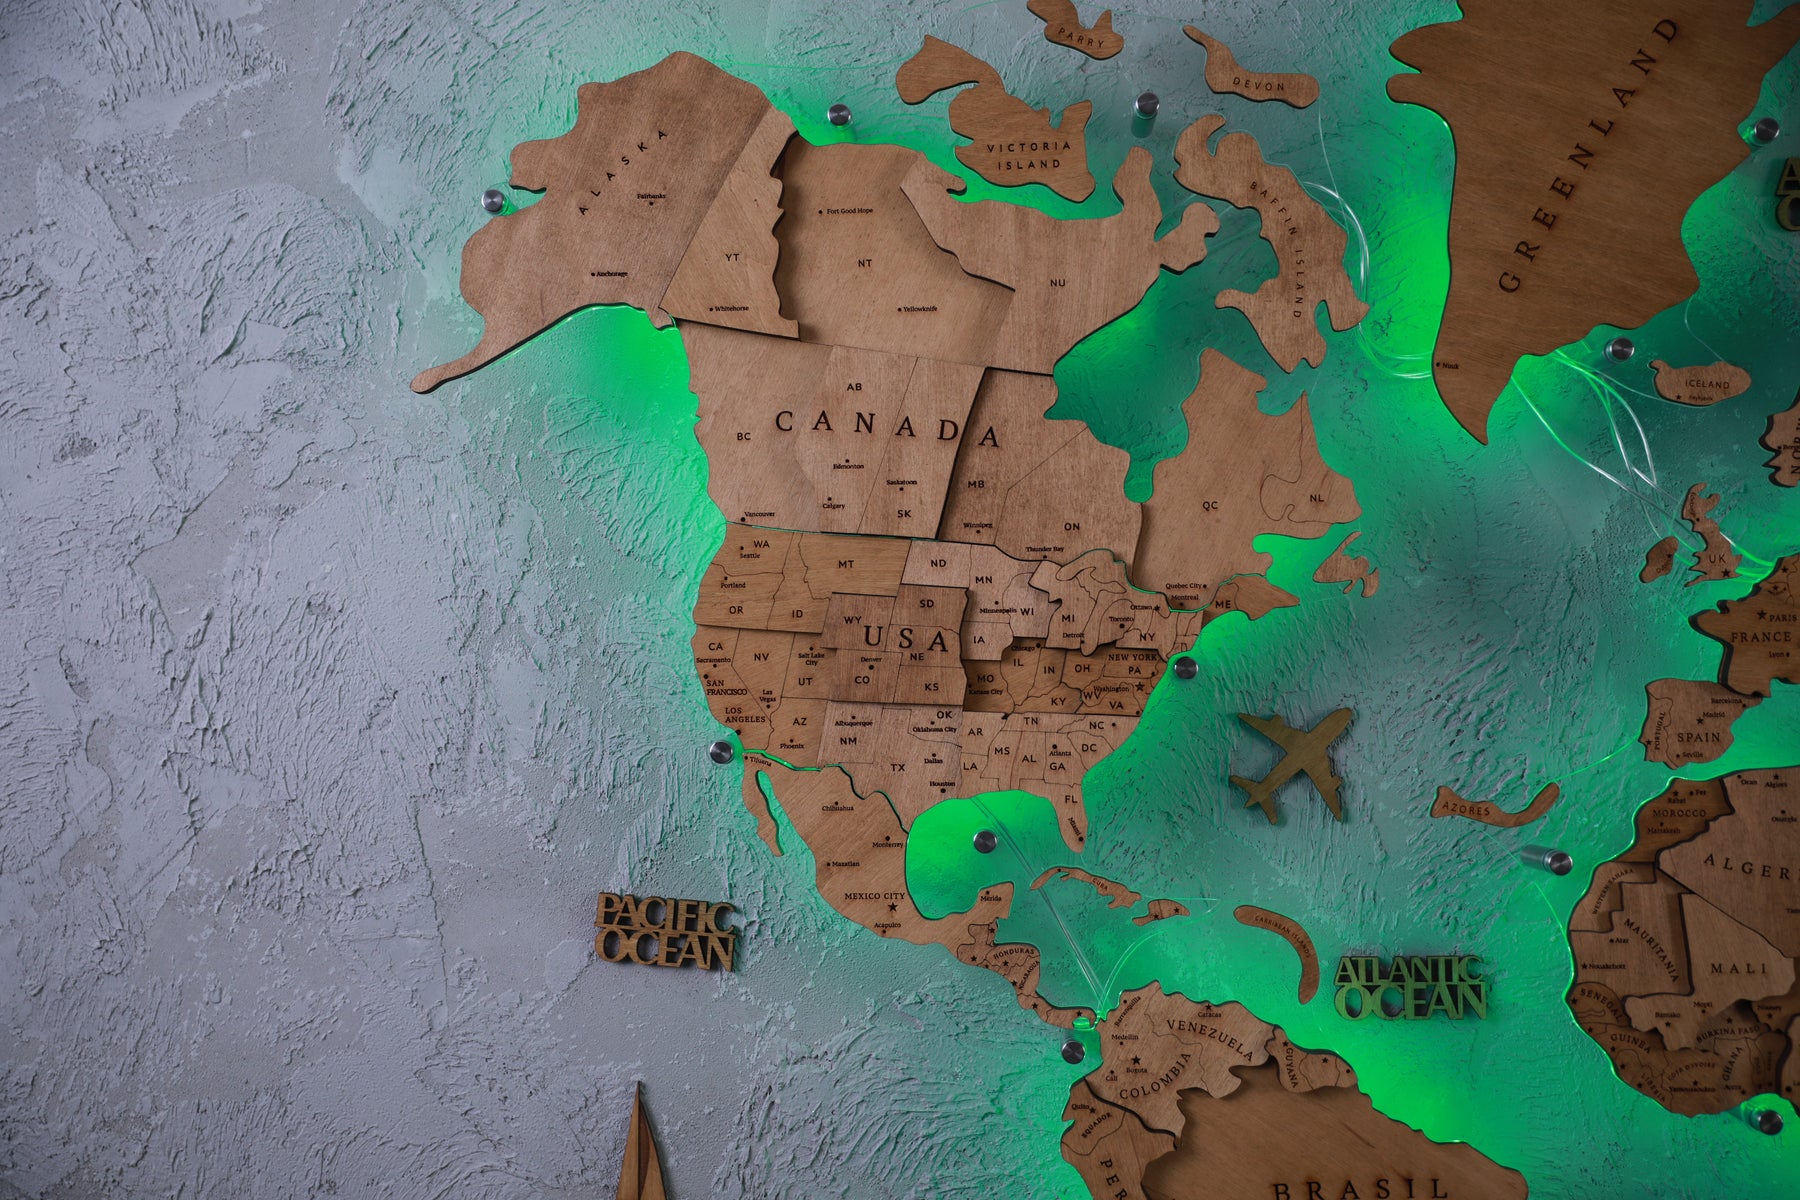 3D Wooden World Map Backlit Multicolor LED